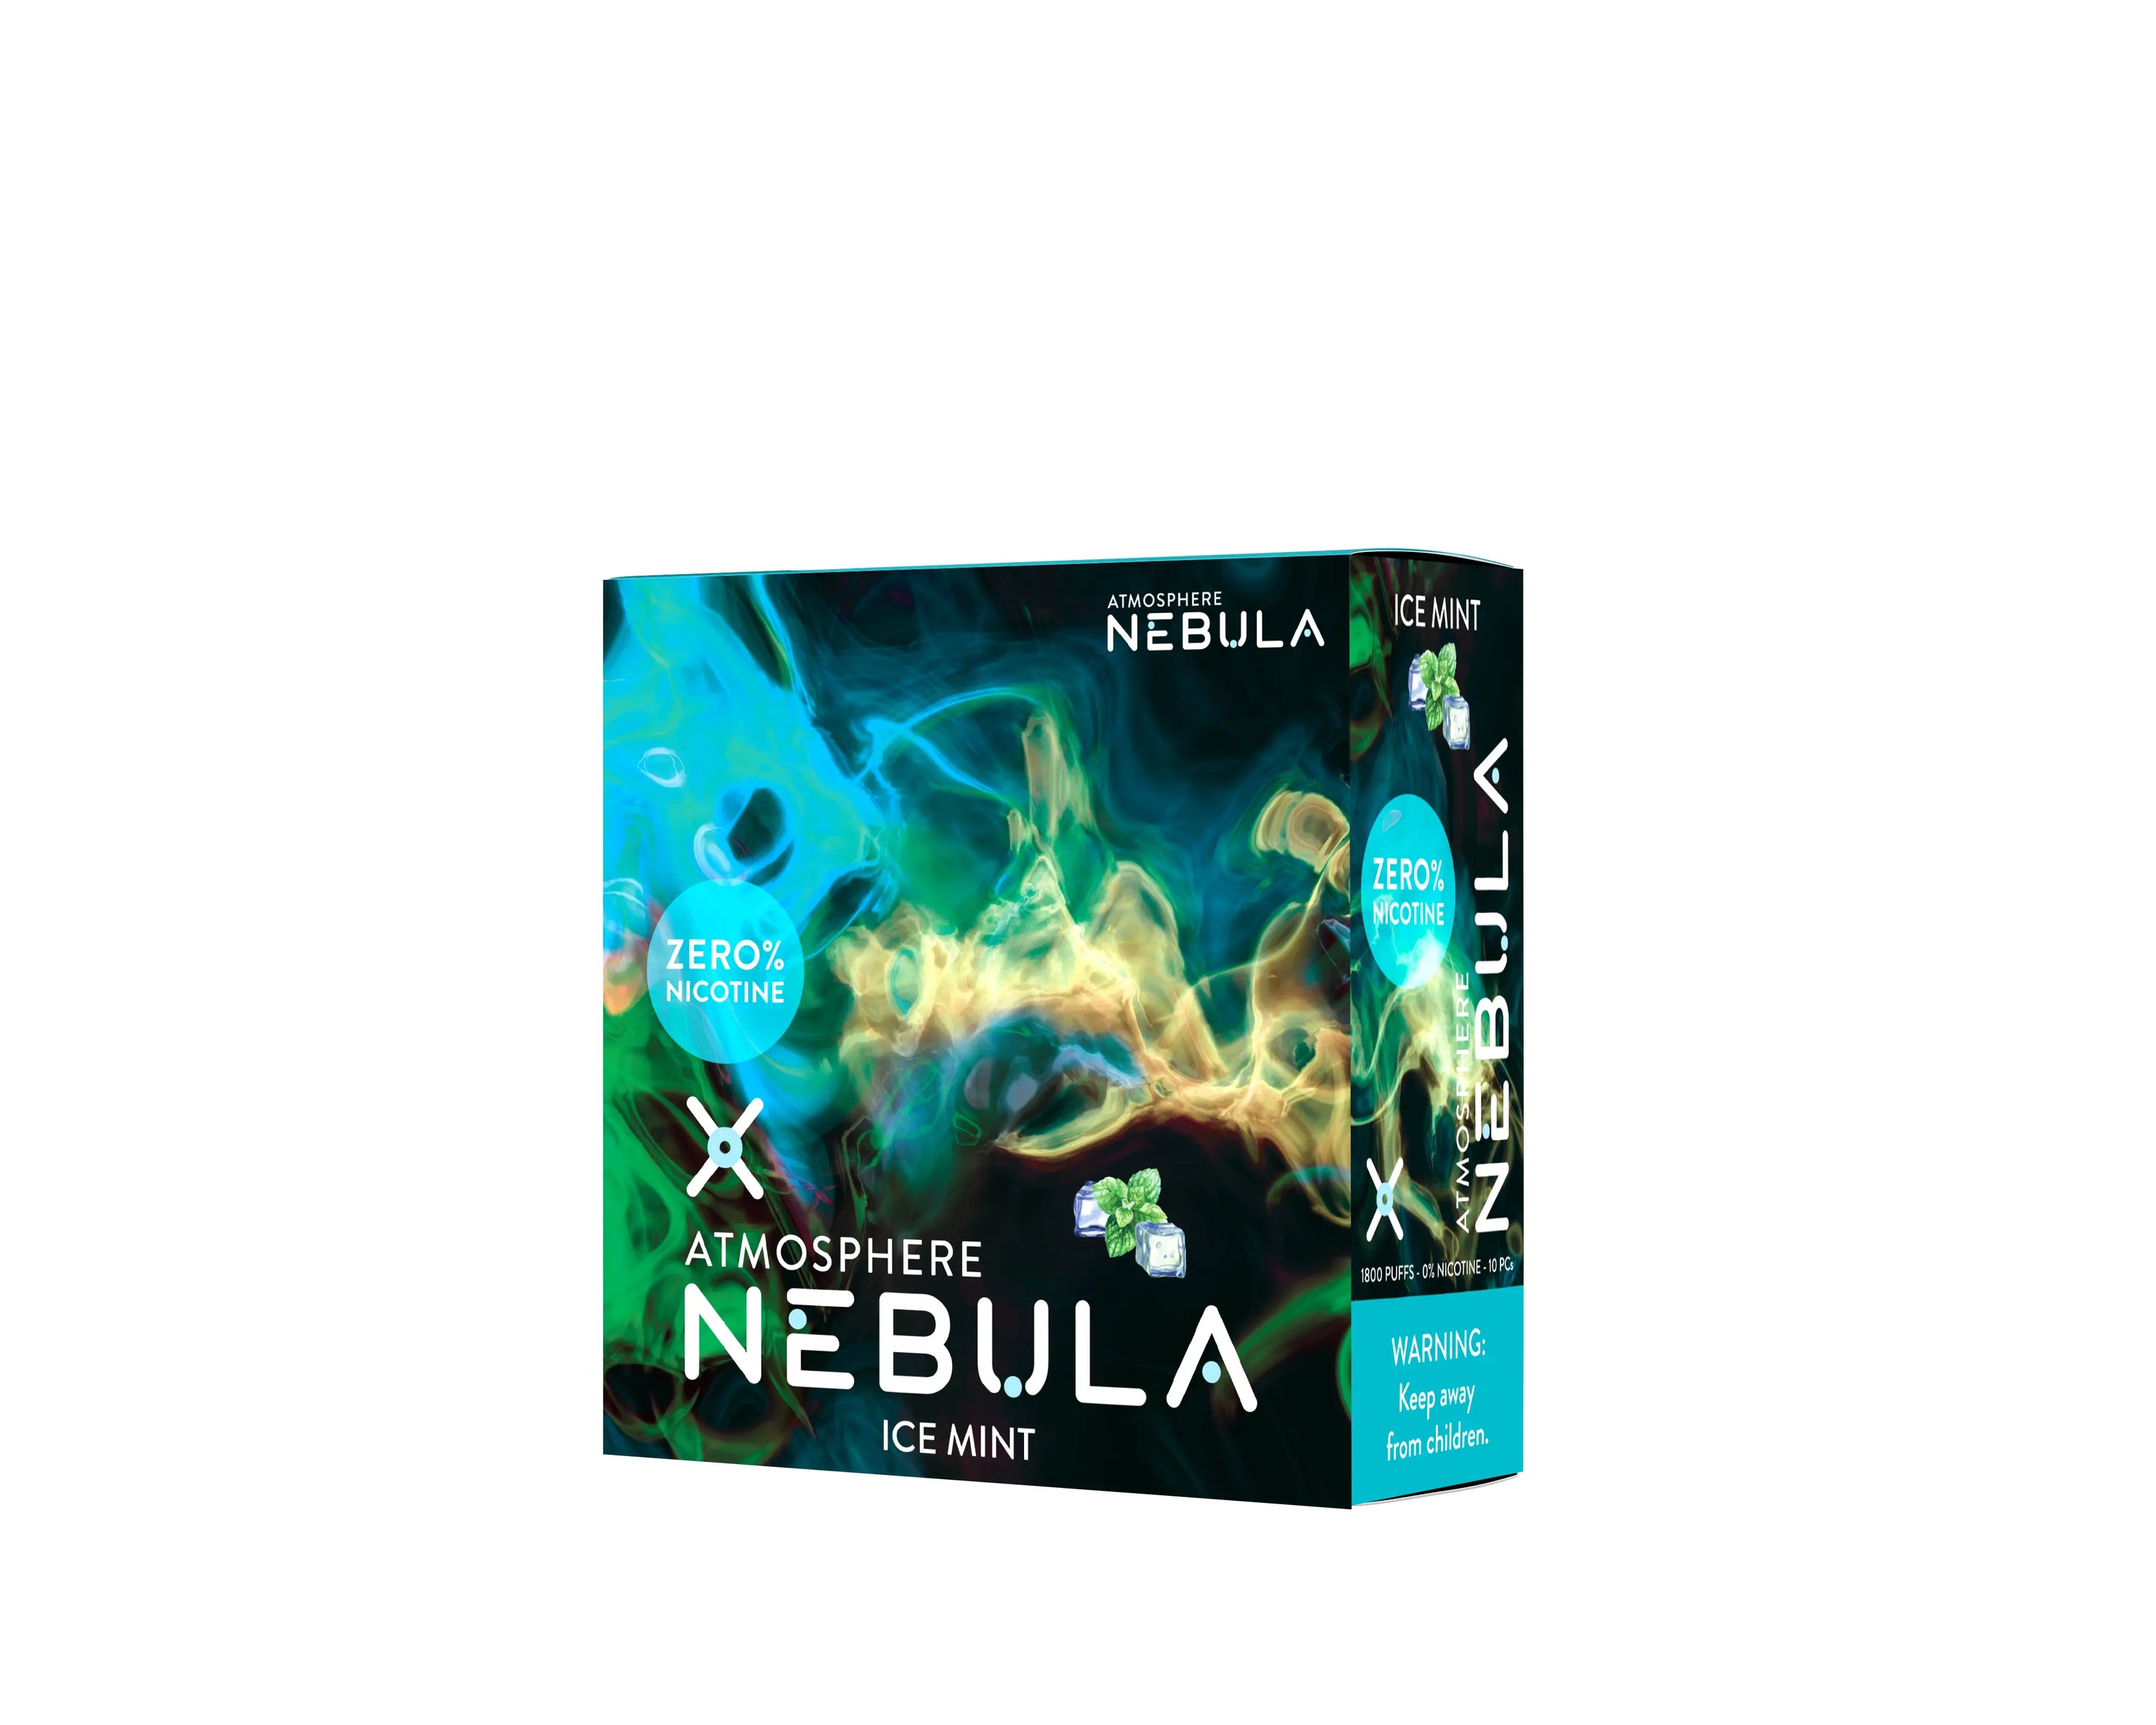 Nebula Atmosphere 0% 1800 Puffs - Ice Mint - B2B Nebula